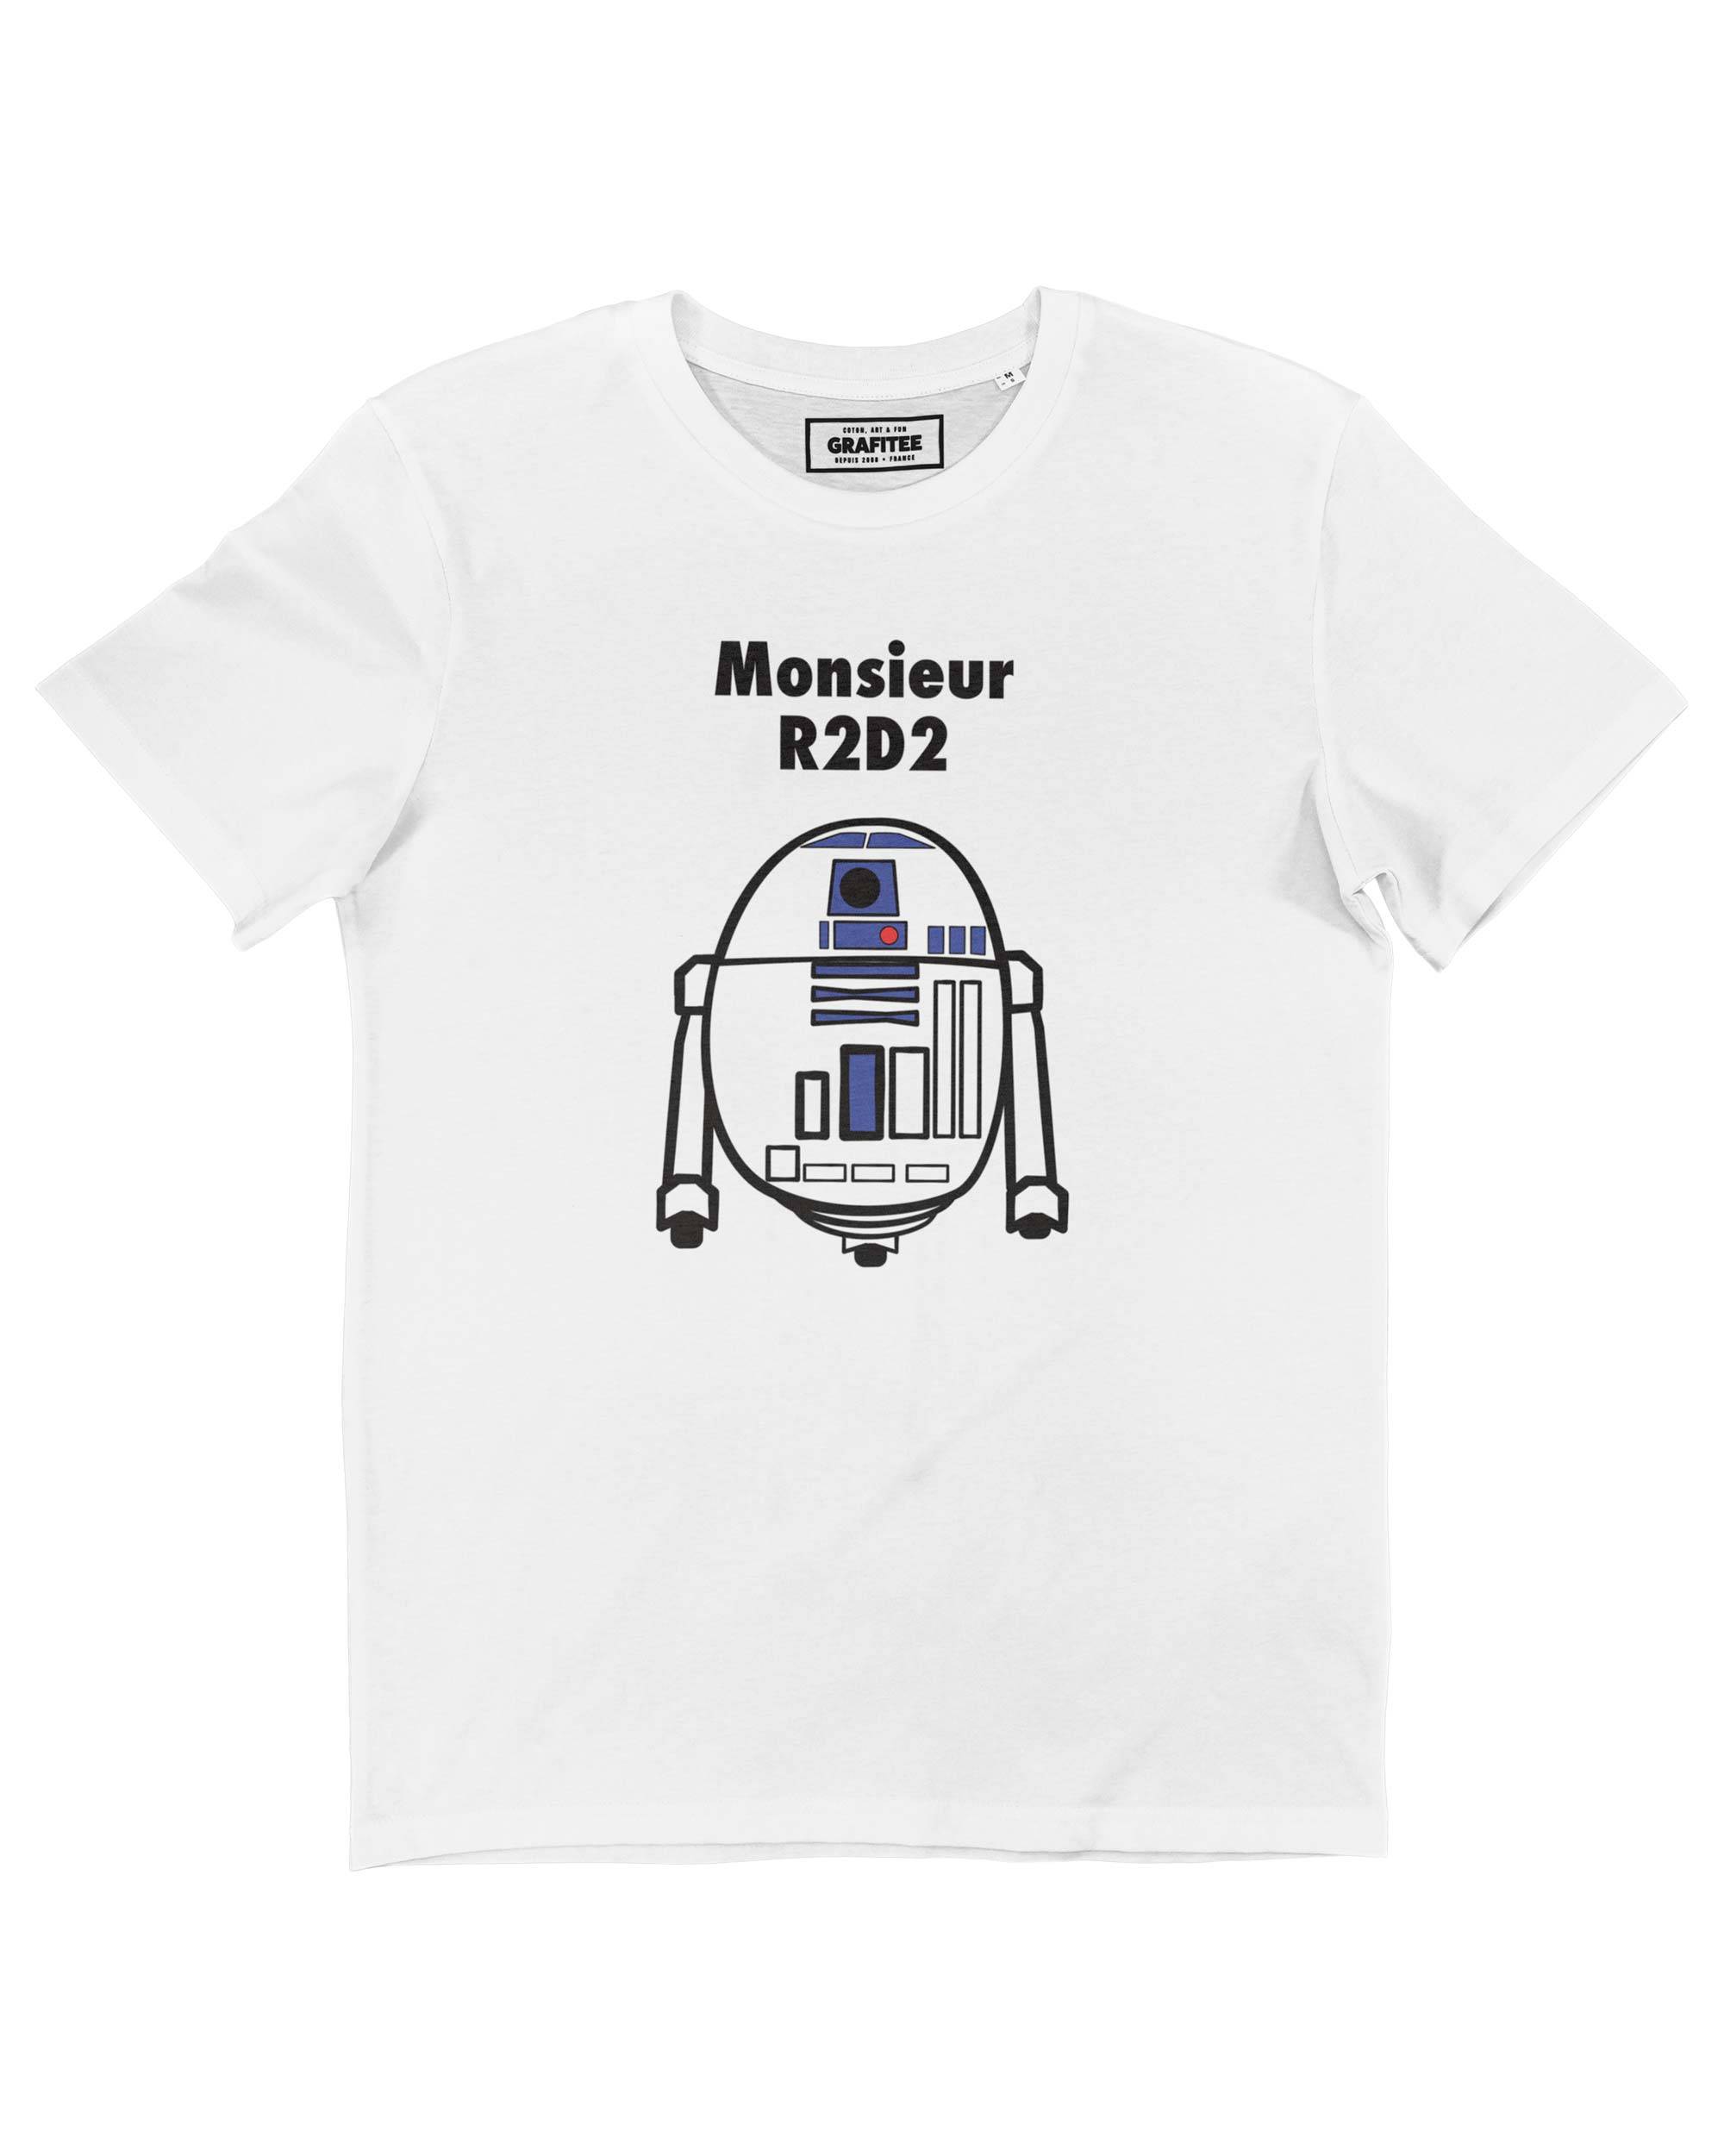 T-shirt Monsieur RD-D2 Grafitee